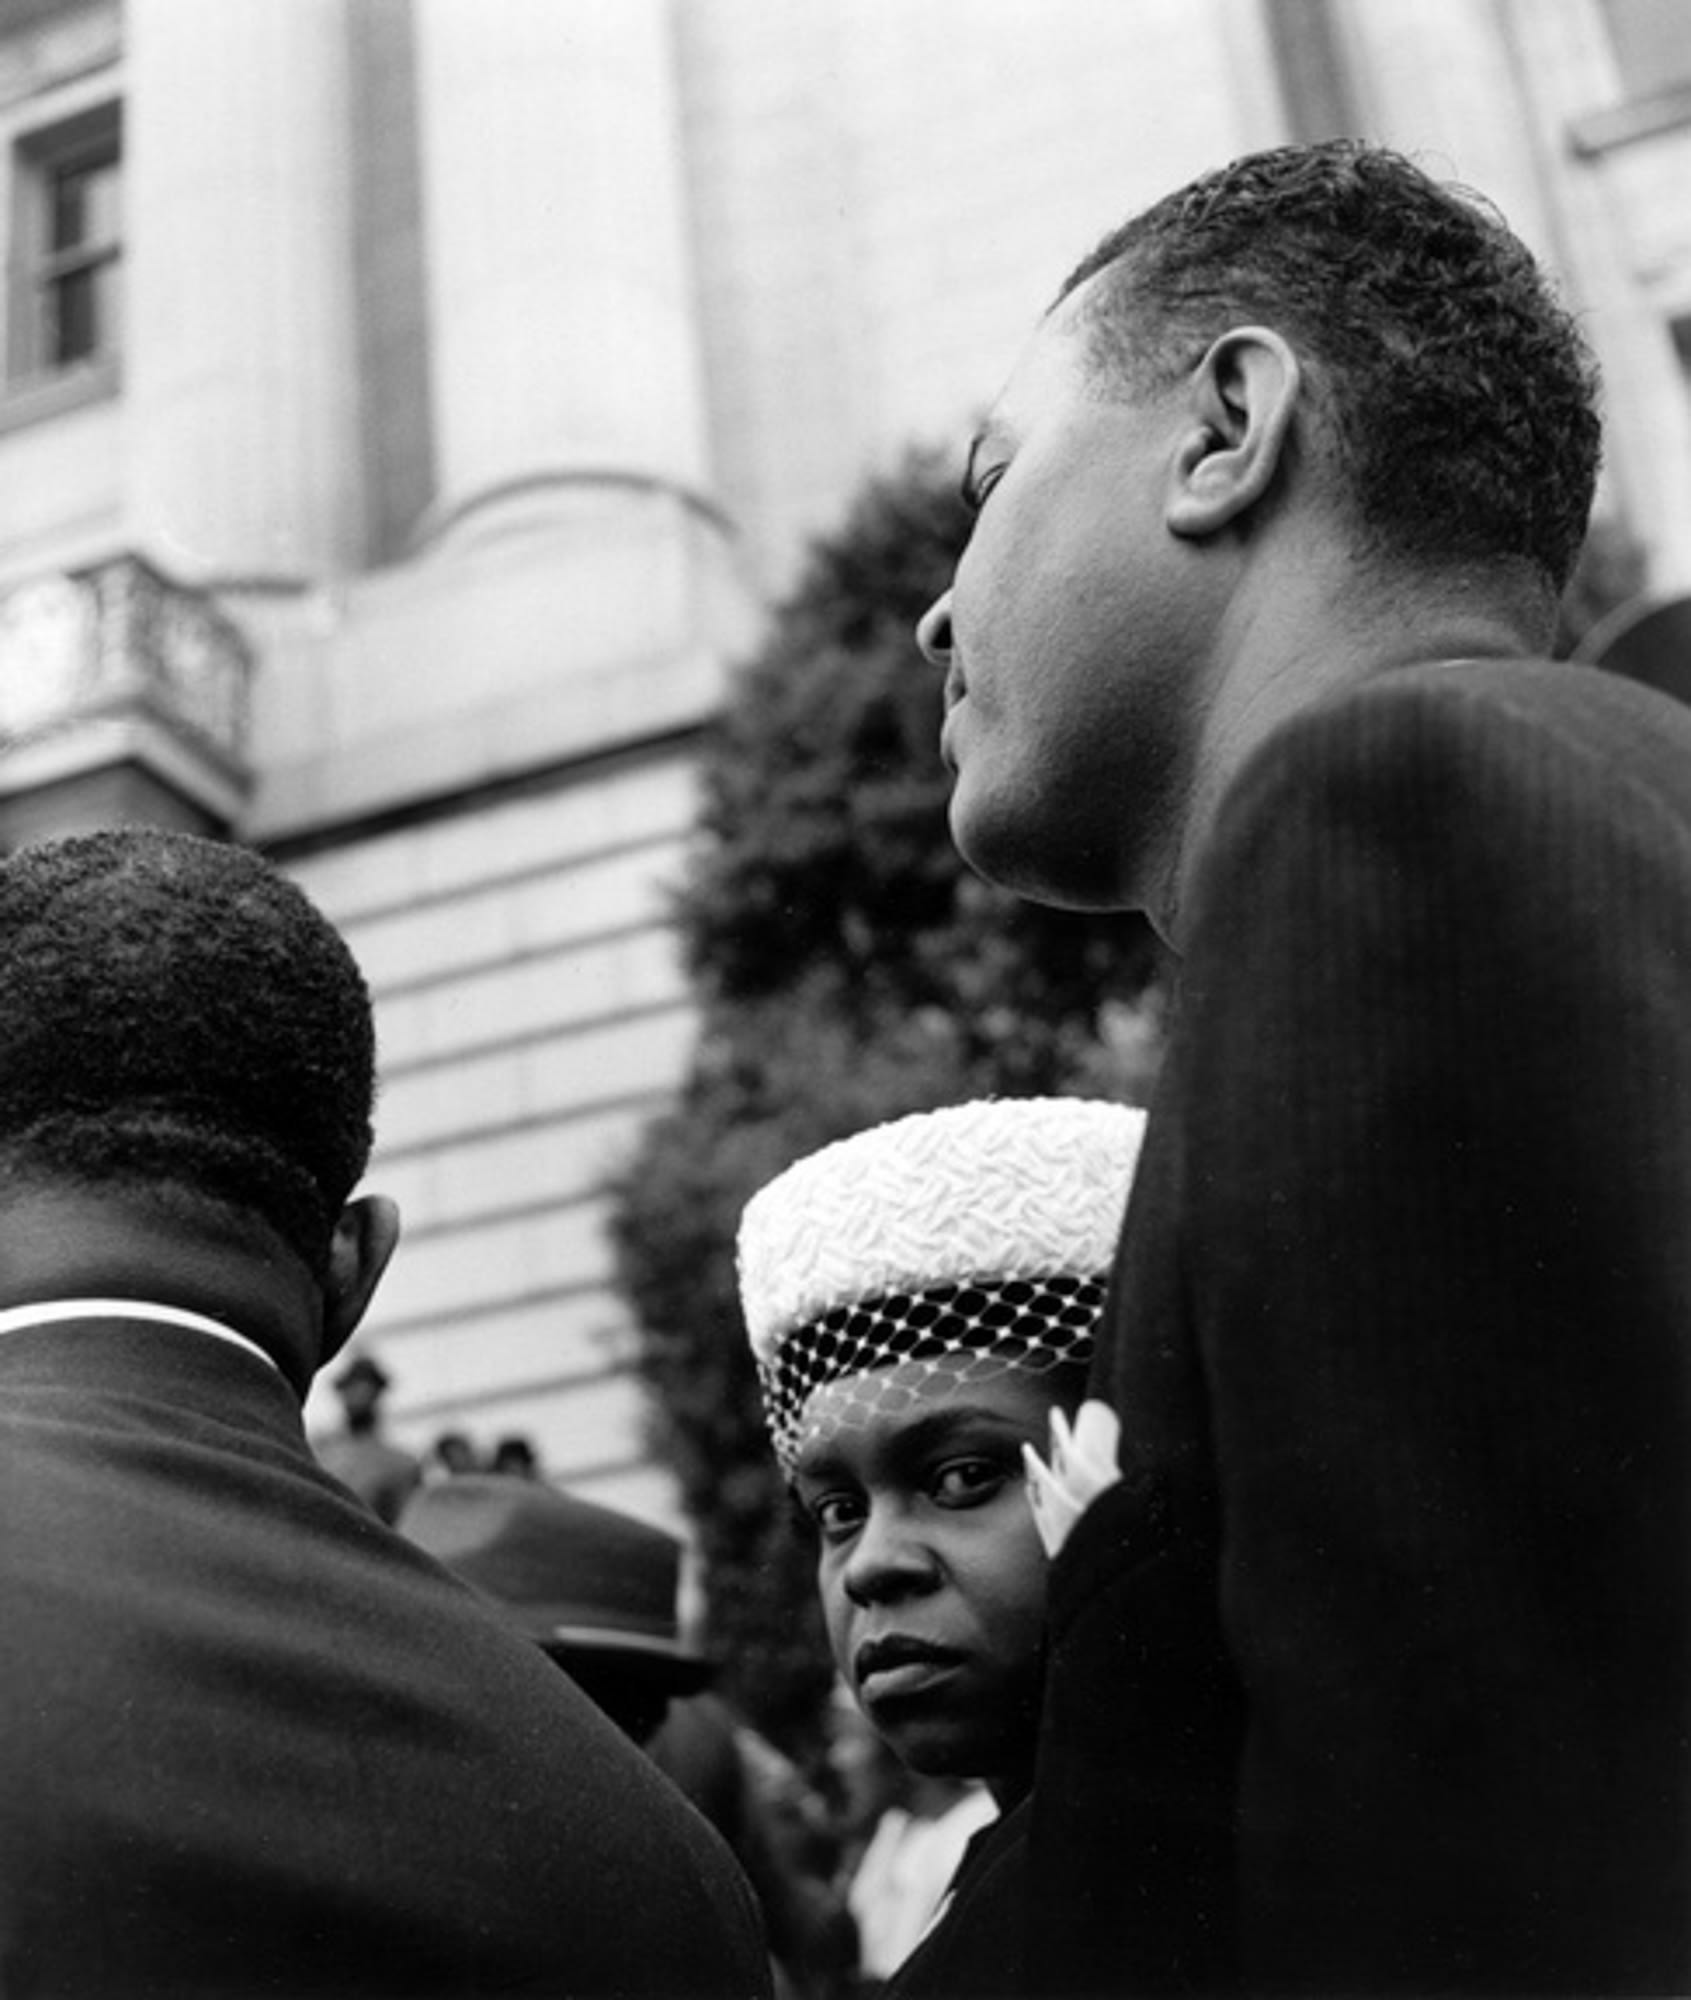 Марш за гражданские права, 1963. Фотограф Имоджен Каннингем